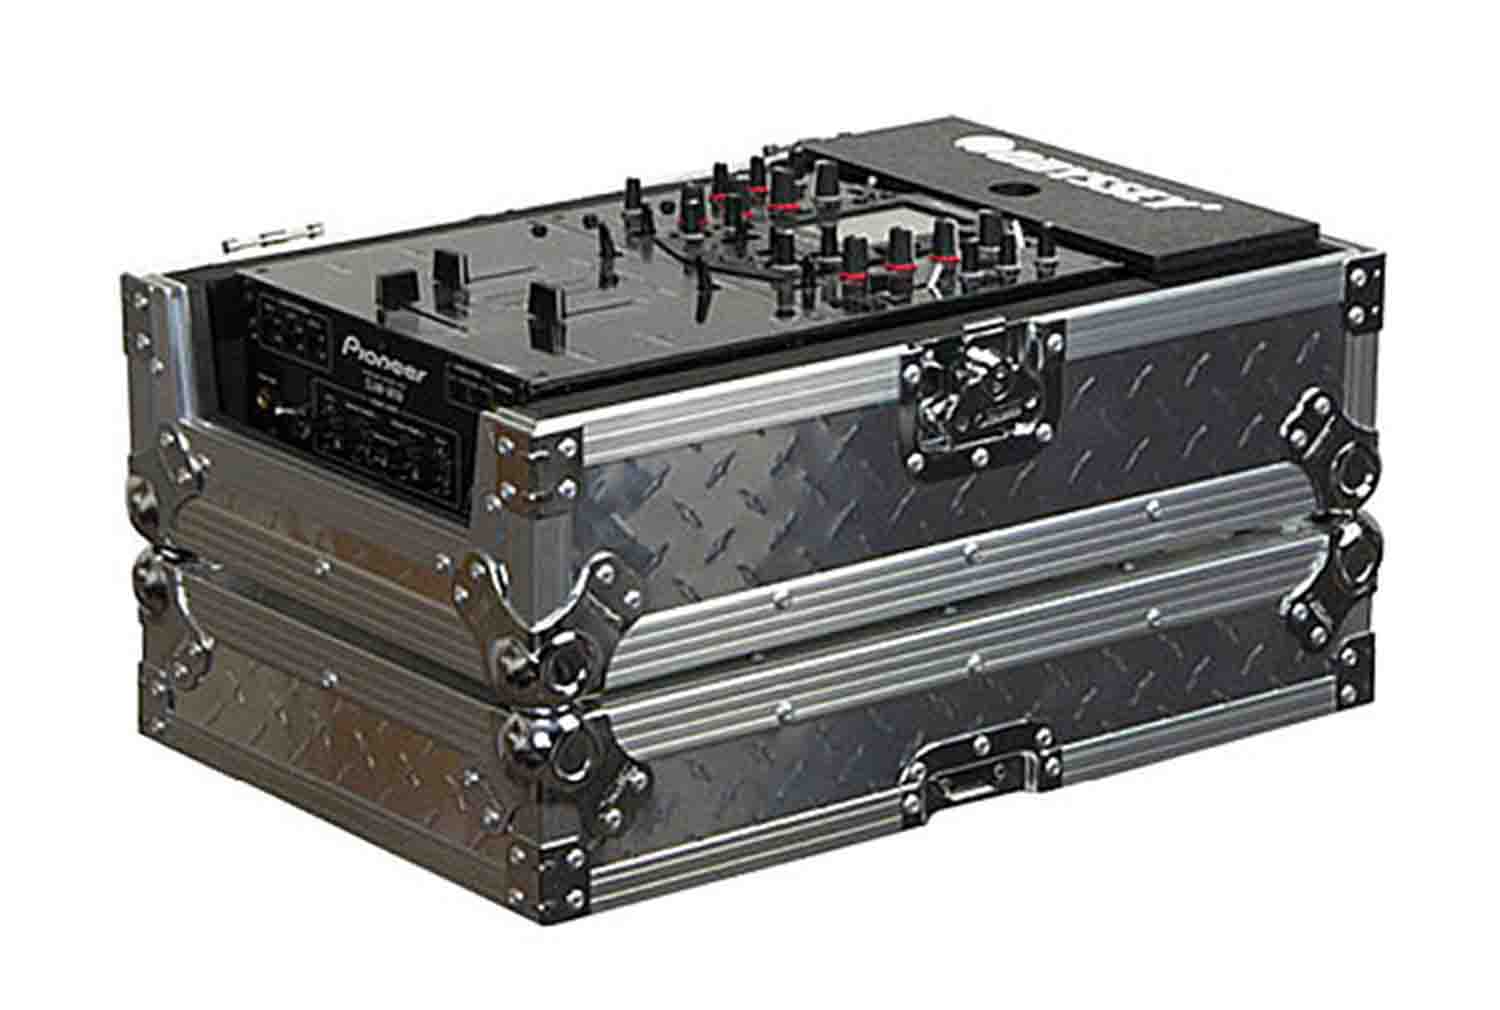 B-Stock: Odyssey FZ10MIXDIA Flight Zone Case for 10" Wide DJ/Audio Mixer - Hollywood DJ